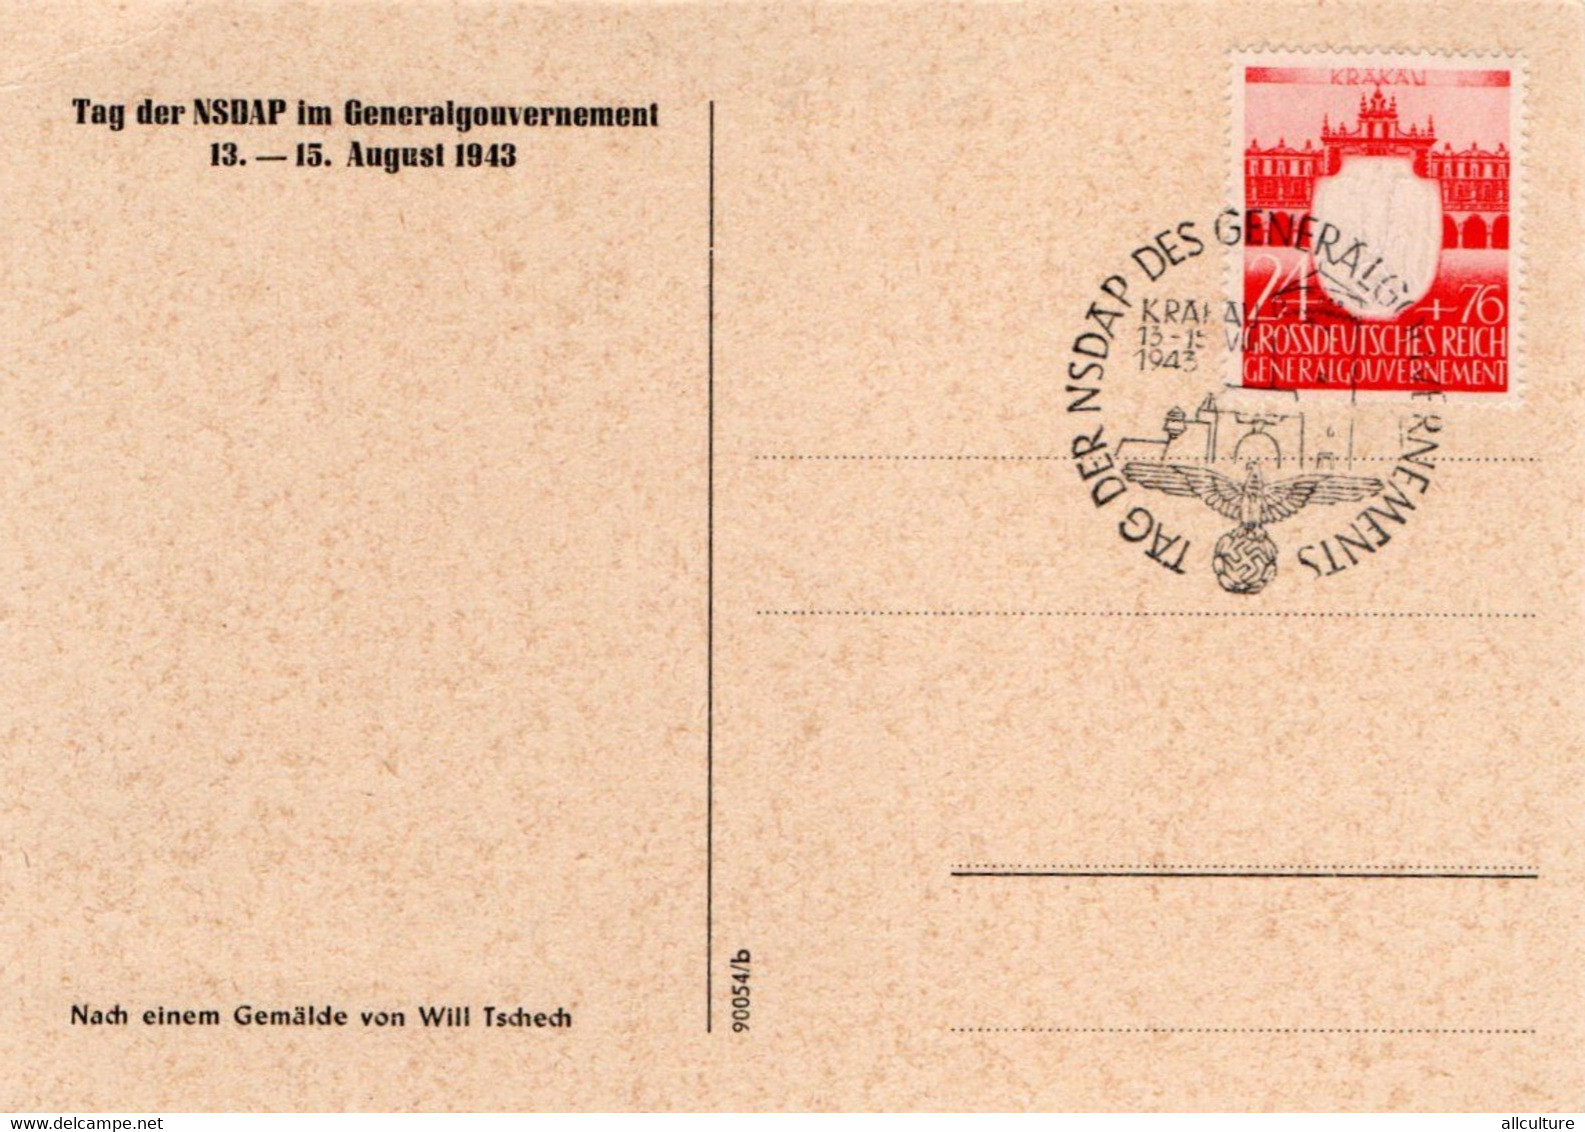 A51 - SONDERN DIE FRONT 2WW POST CARD UNUSED AUGUST 1943 - Weltkrieg 1939-45